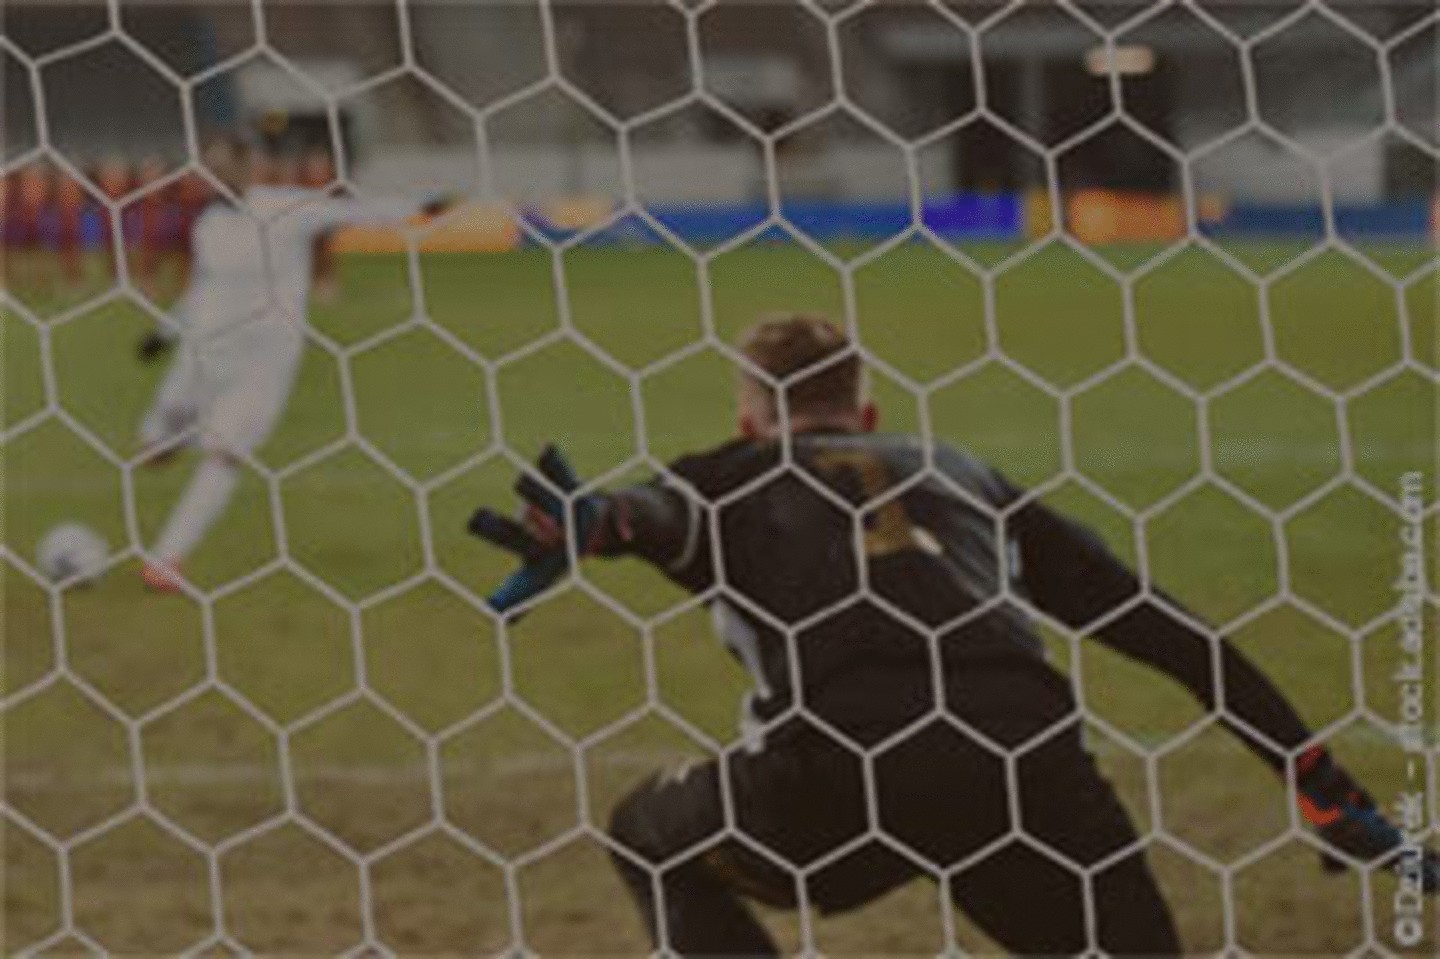 Ein Fußballspieler schießt einen Elfmeter, während der Torwart sich auf die Abwehr vorbereitet, durch das Netz von hinten gesehen.